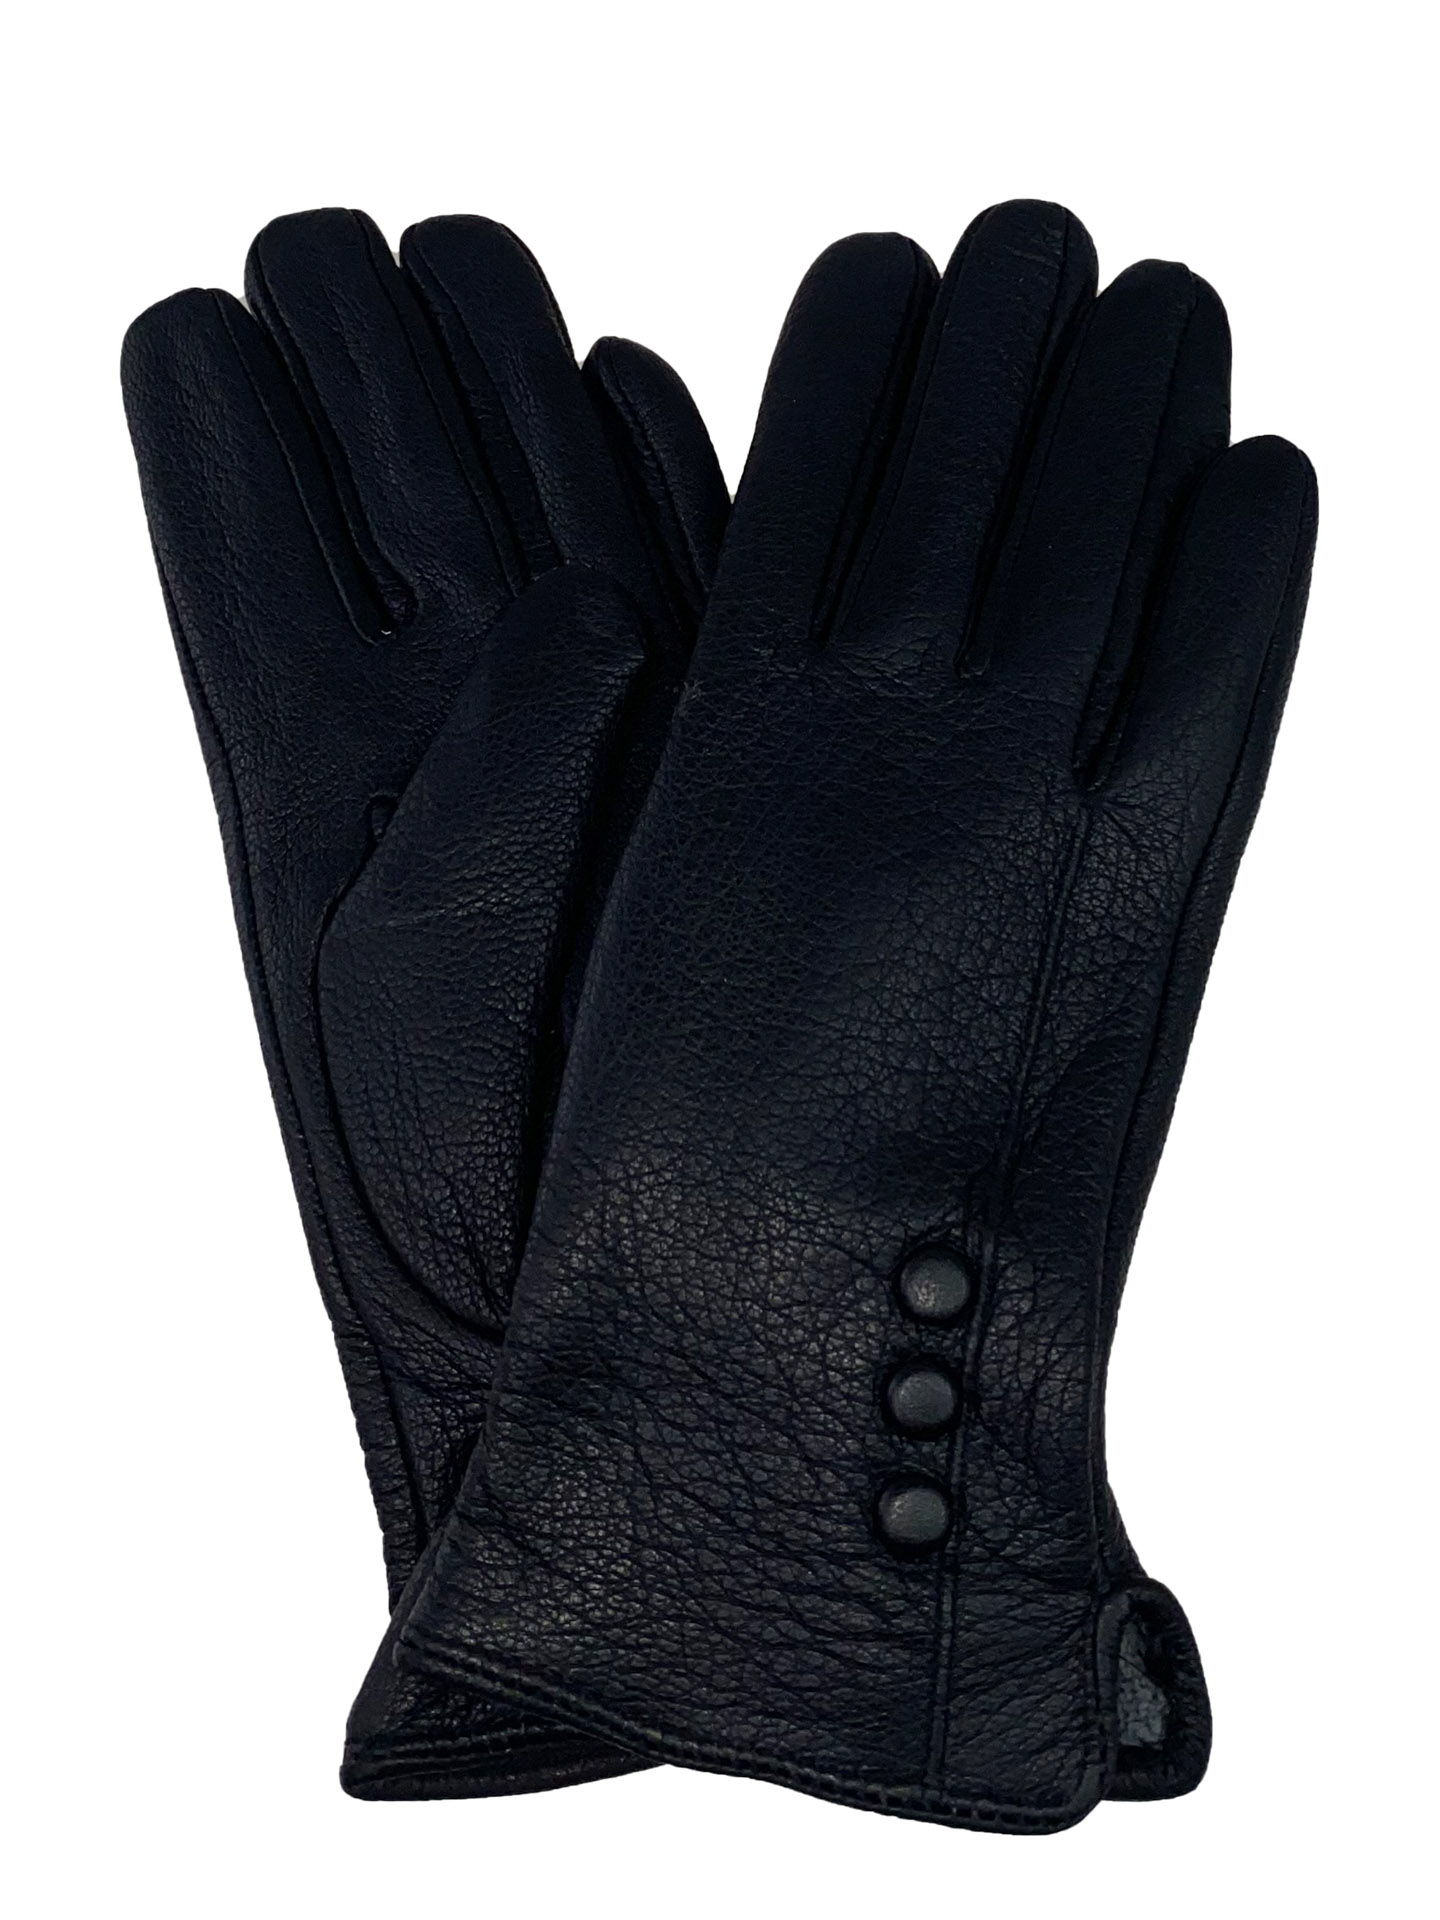 Женские утеплённые перчатки из натуральной кожи оленя, цвет чёрный